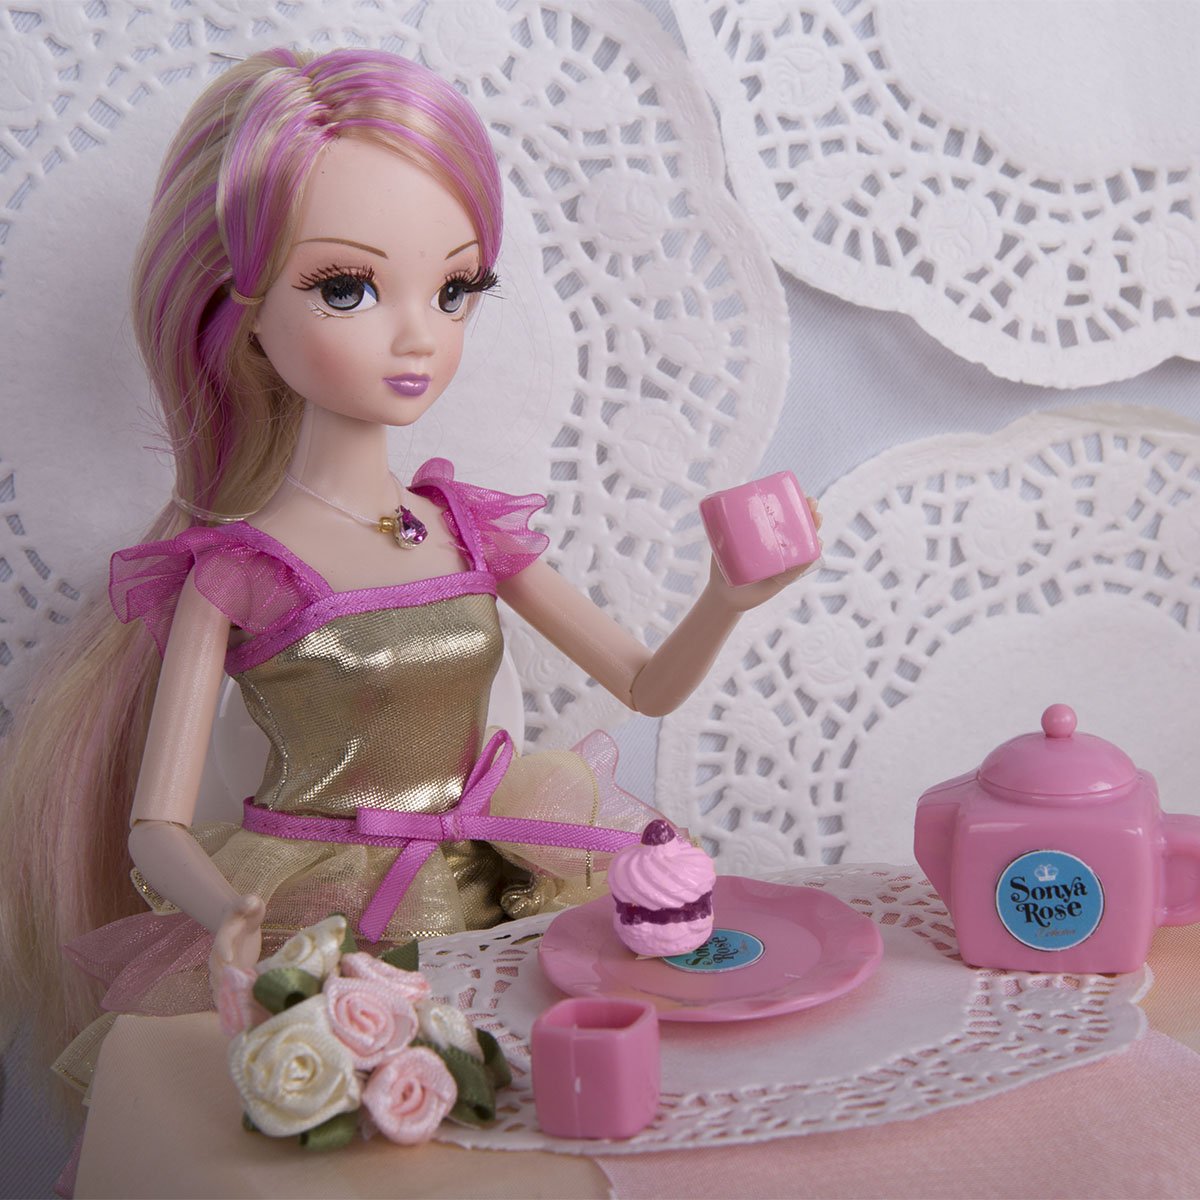 Кукла Sonyа Rose серии Daily collechion Чайная вечеринка